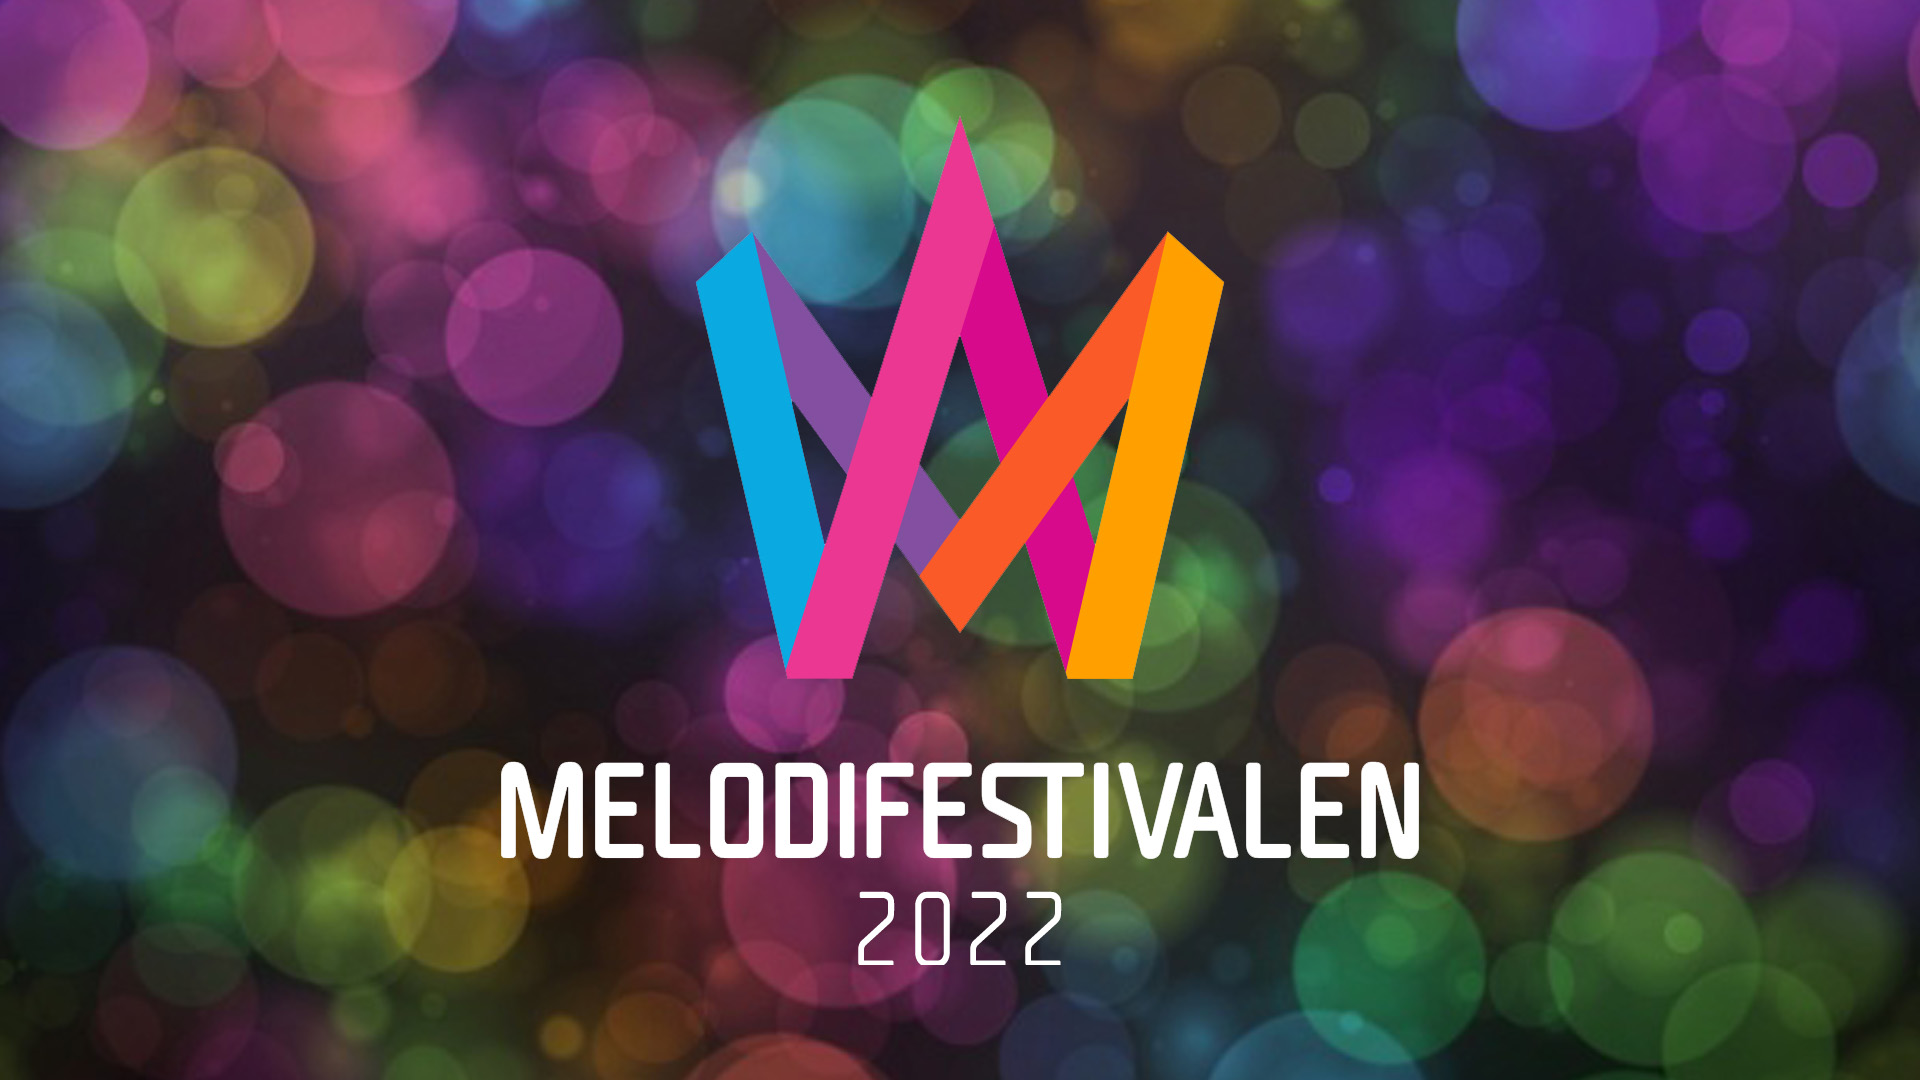 Sweden: SVT reveals the running order for Melodifestivalen 2022 Final